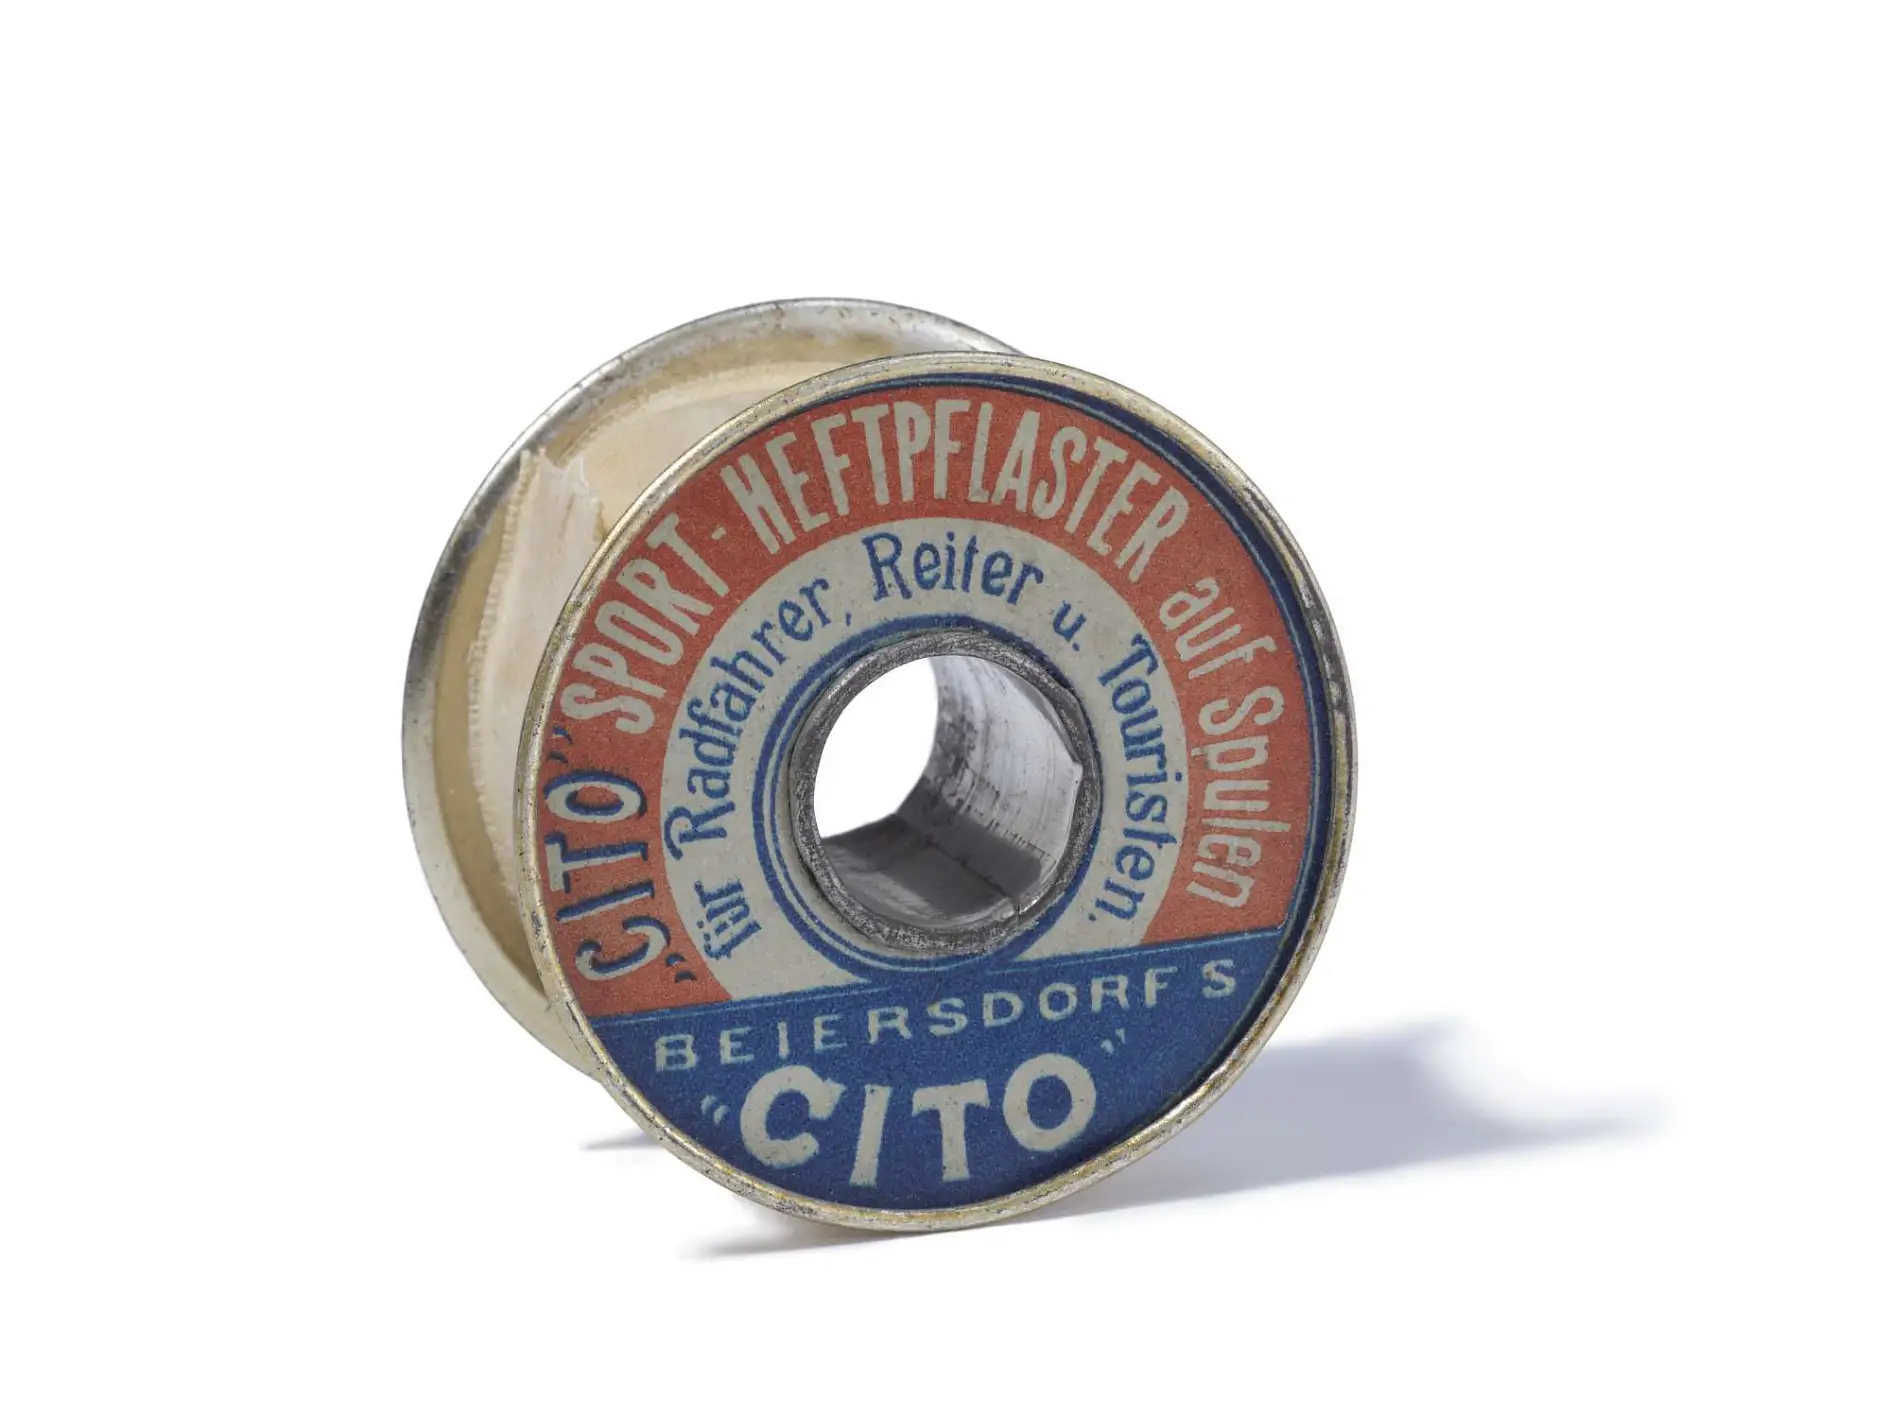 Băng dính thể thao Cito, ra đời năm 1896, là băng dính kỹ thuật đầu tiên trên thế giới.